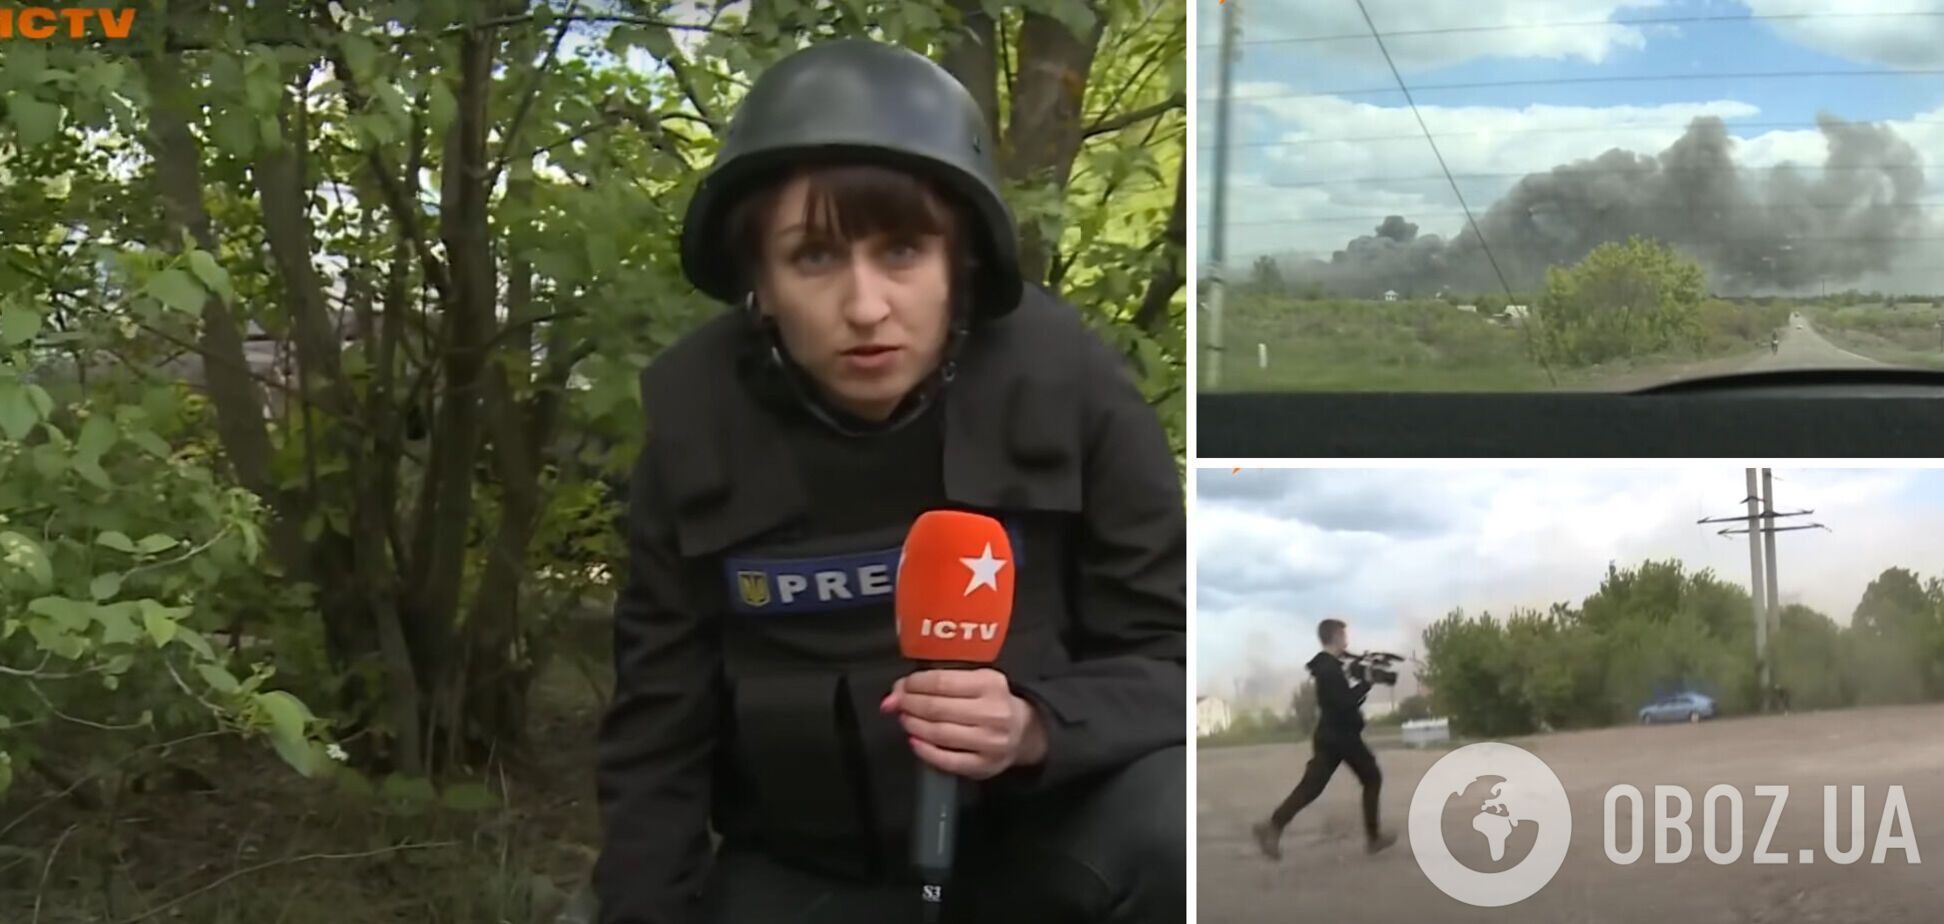 Съемочная группа ICTV попала под ракетный обстрел в Донецкой области